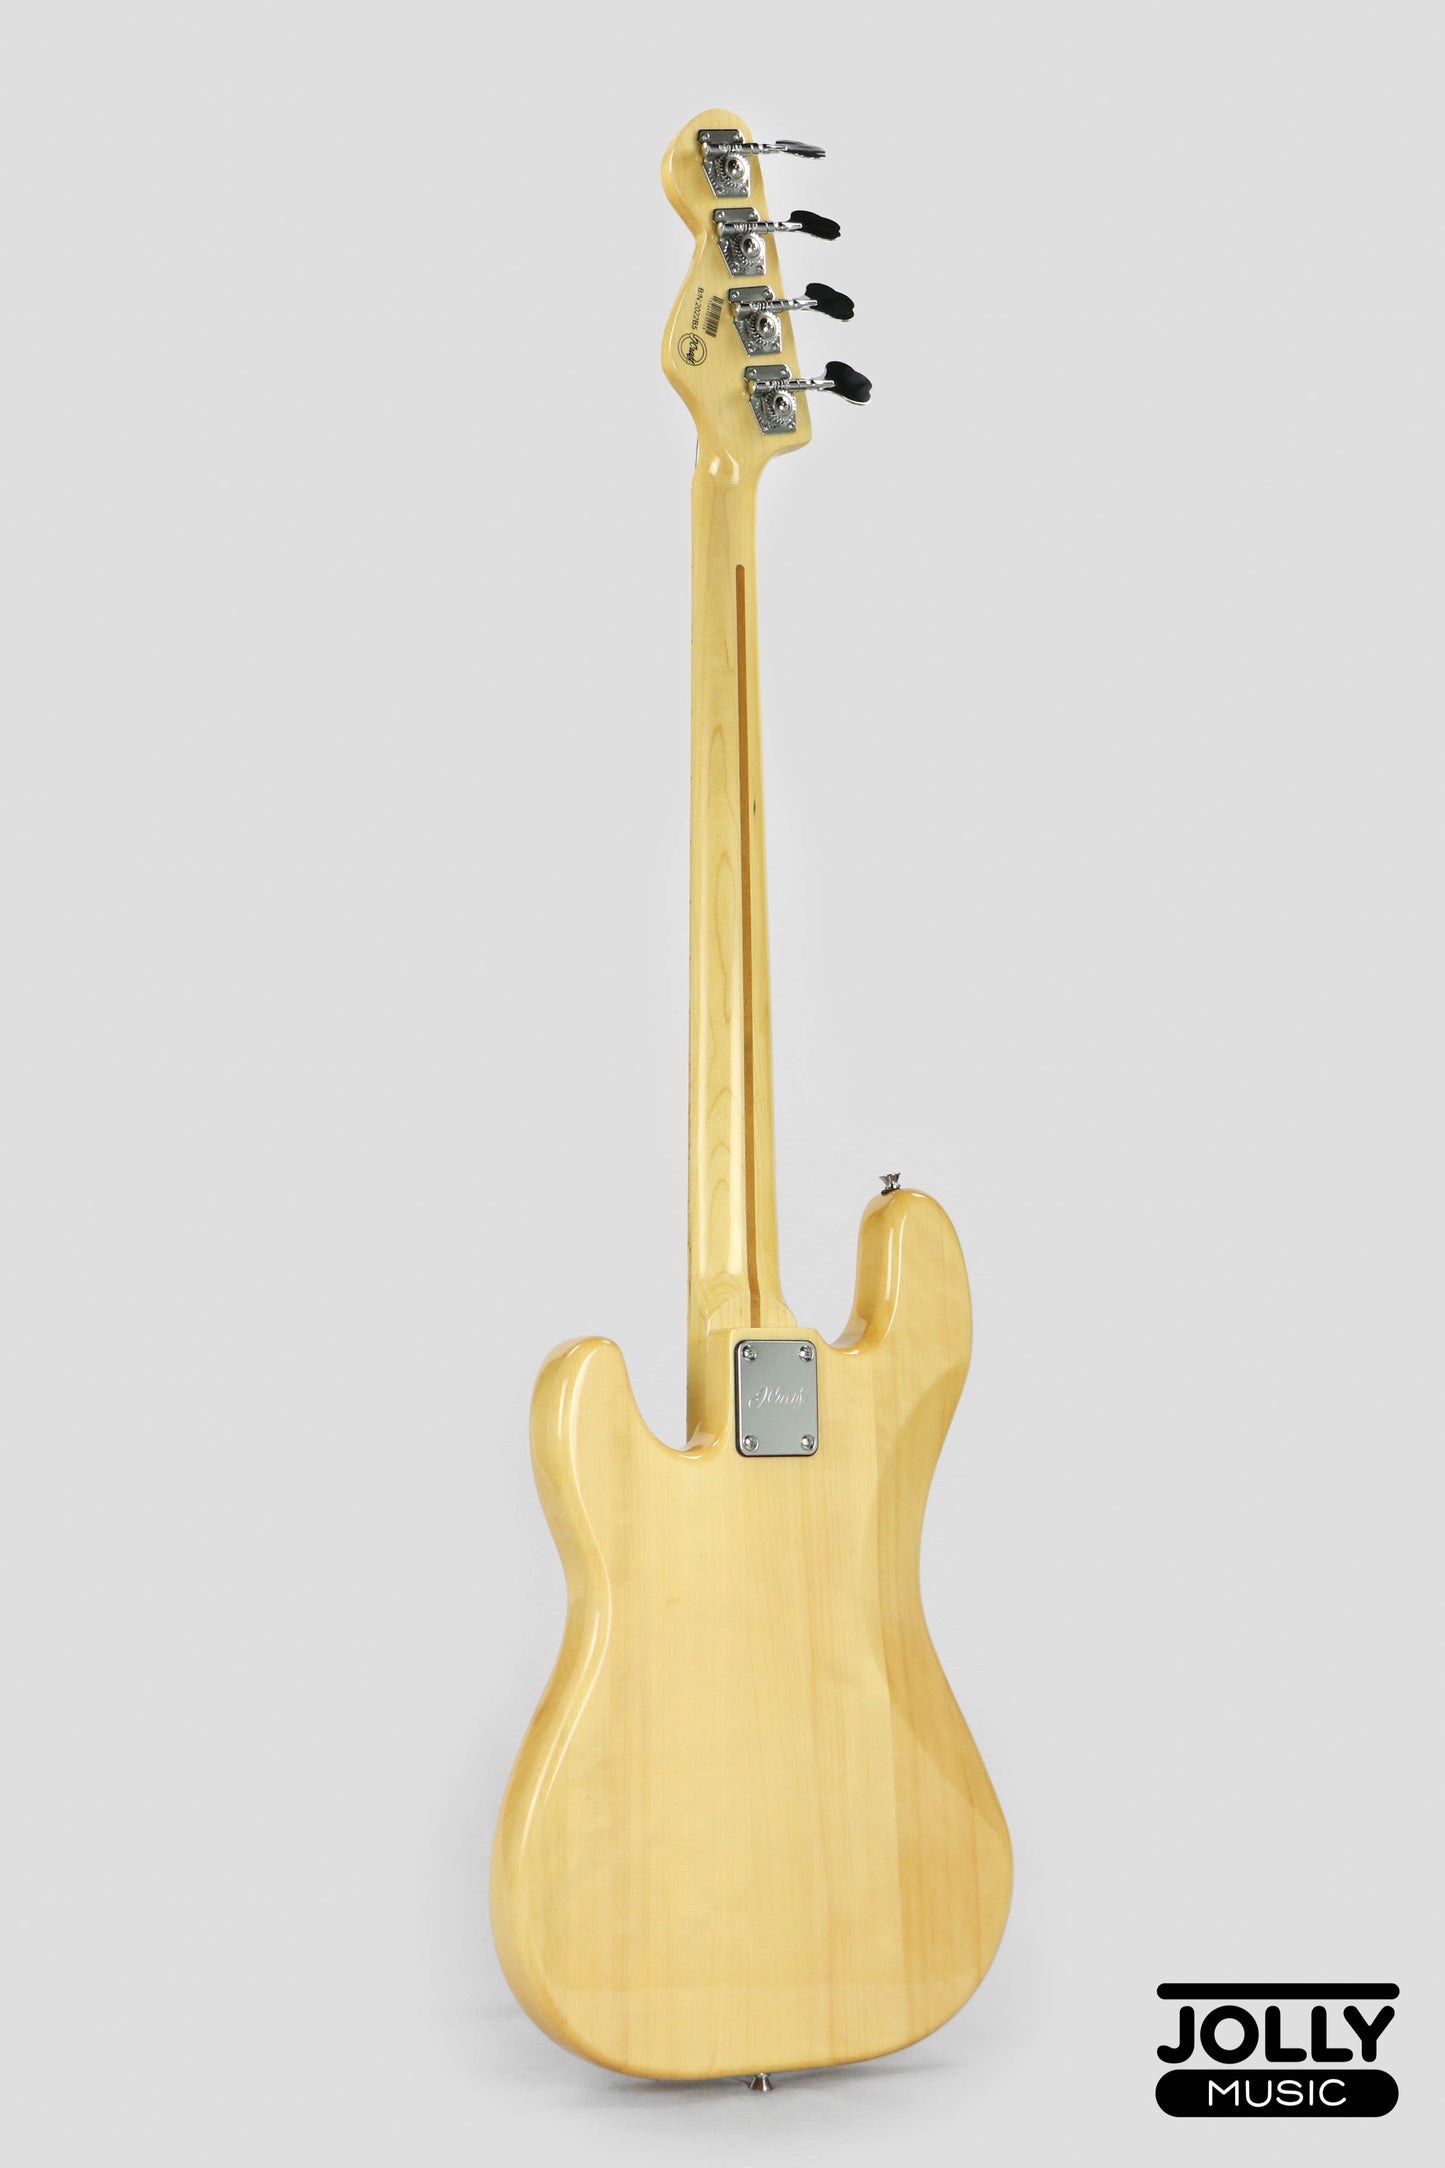 JCraft PB-2 4-String Bass Guitar - Natural